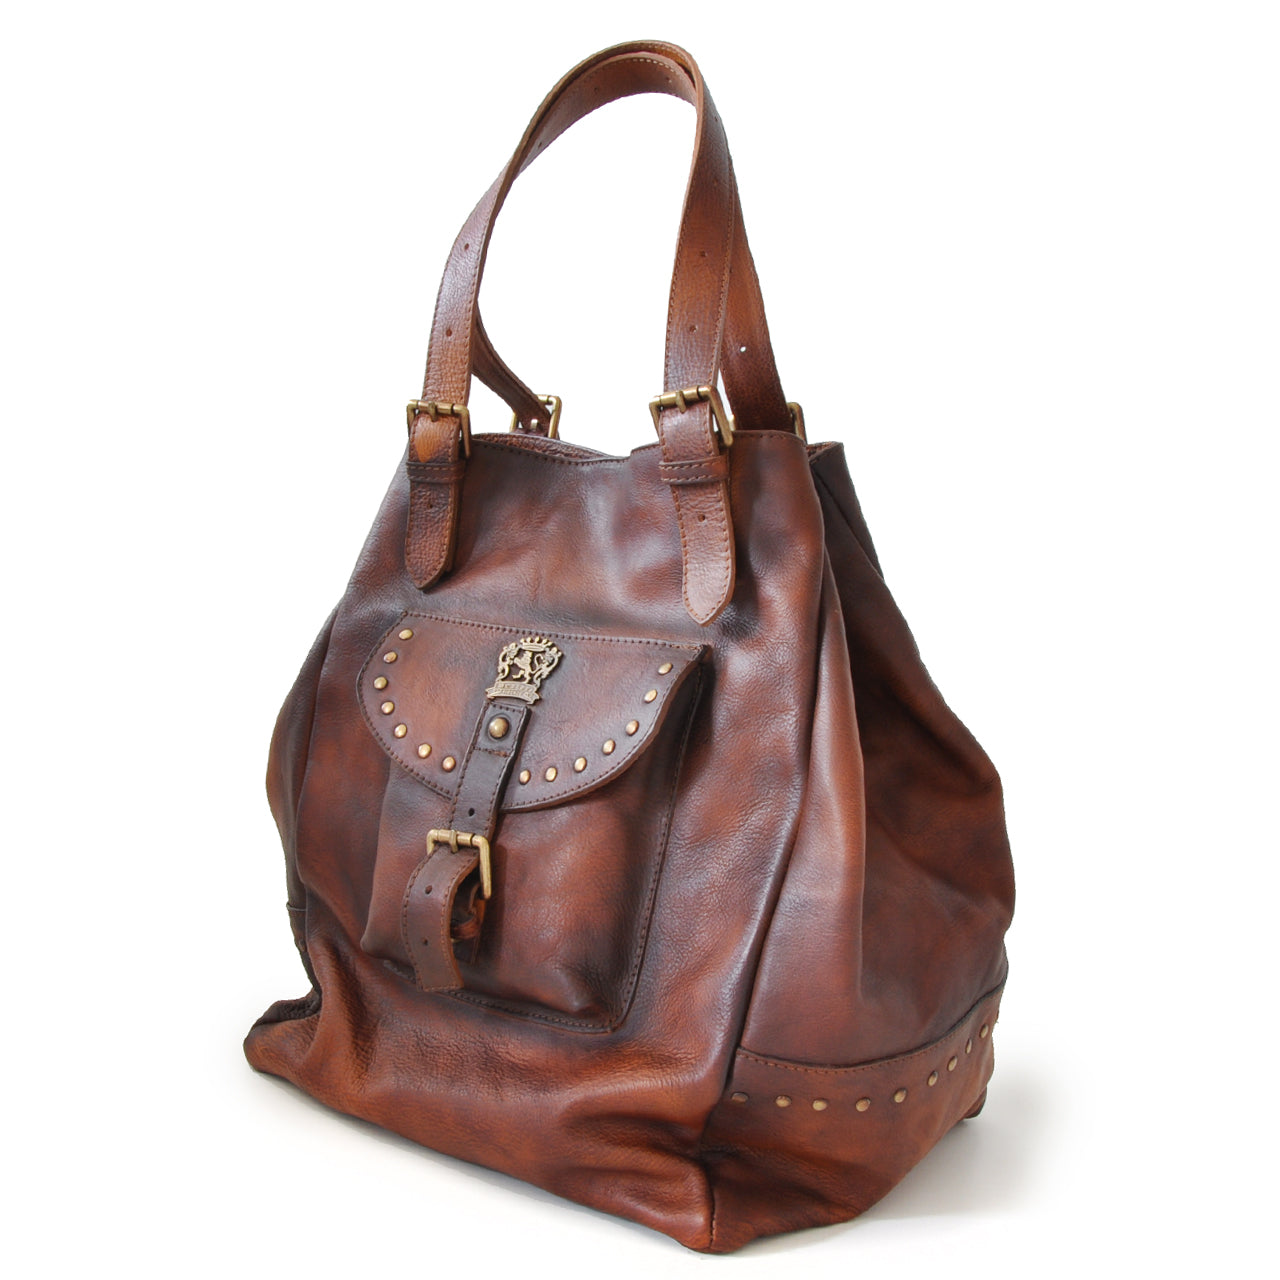 Pratesi Woman Bag Talamone in genuine Italian leather